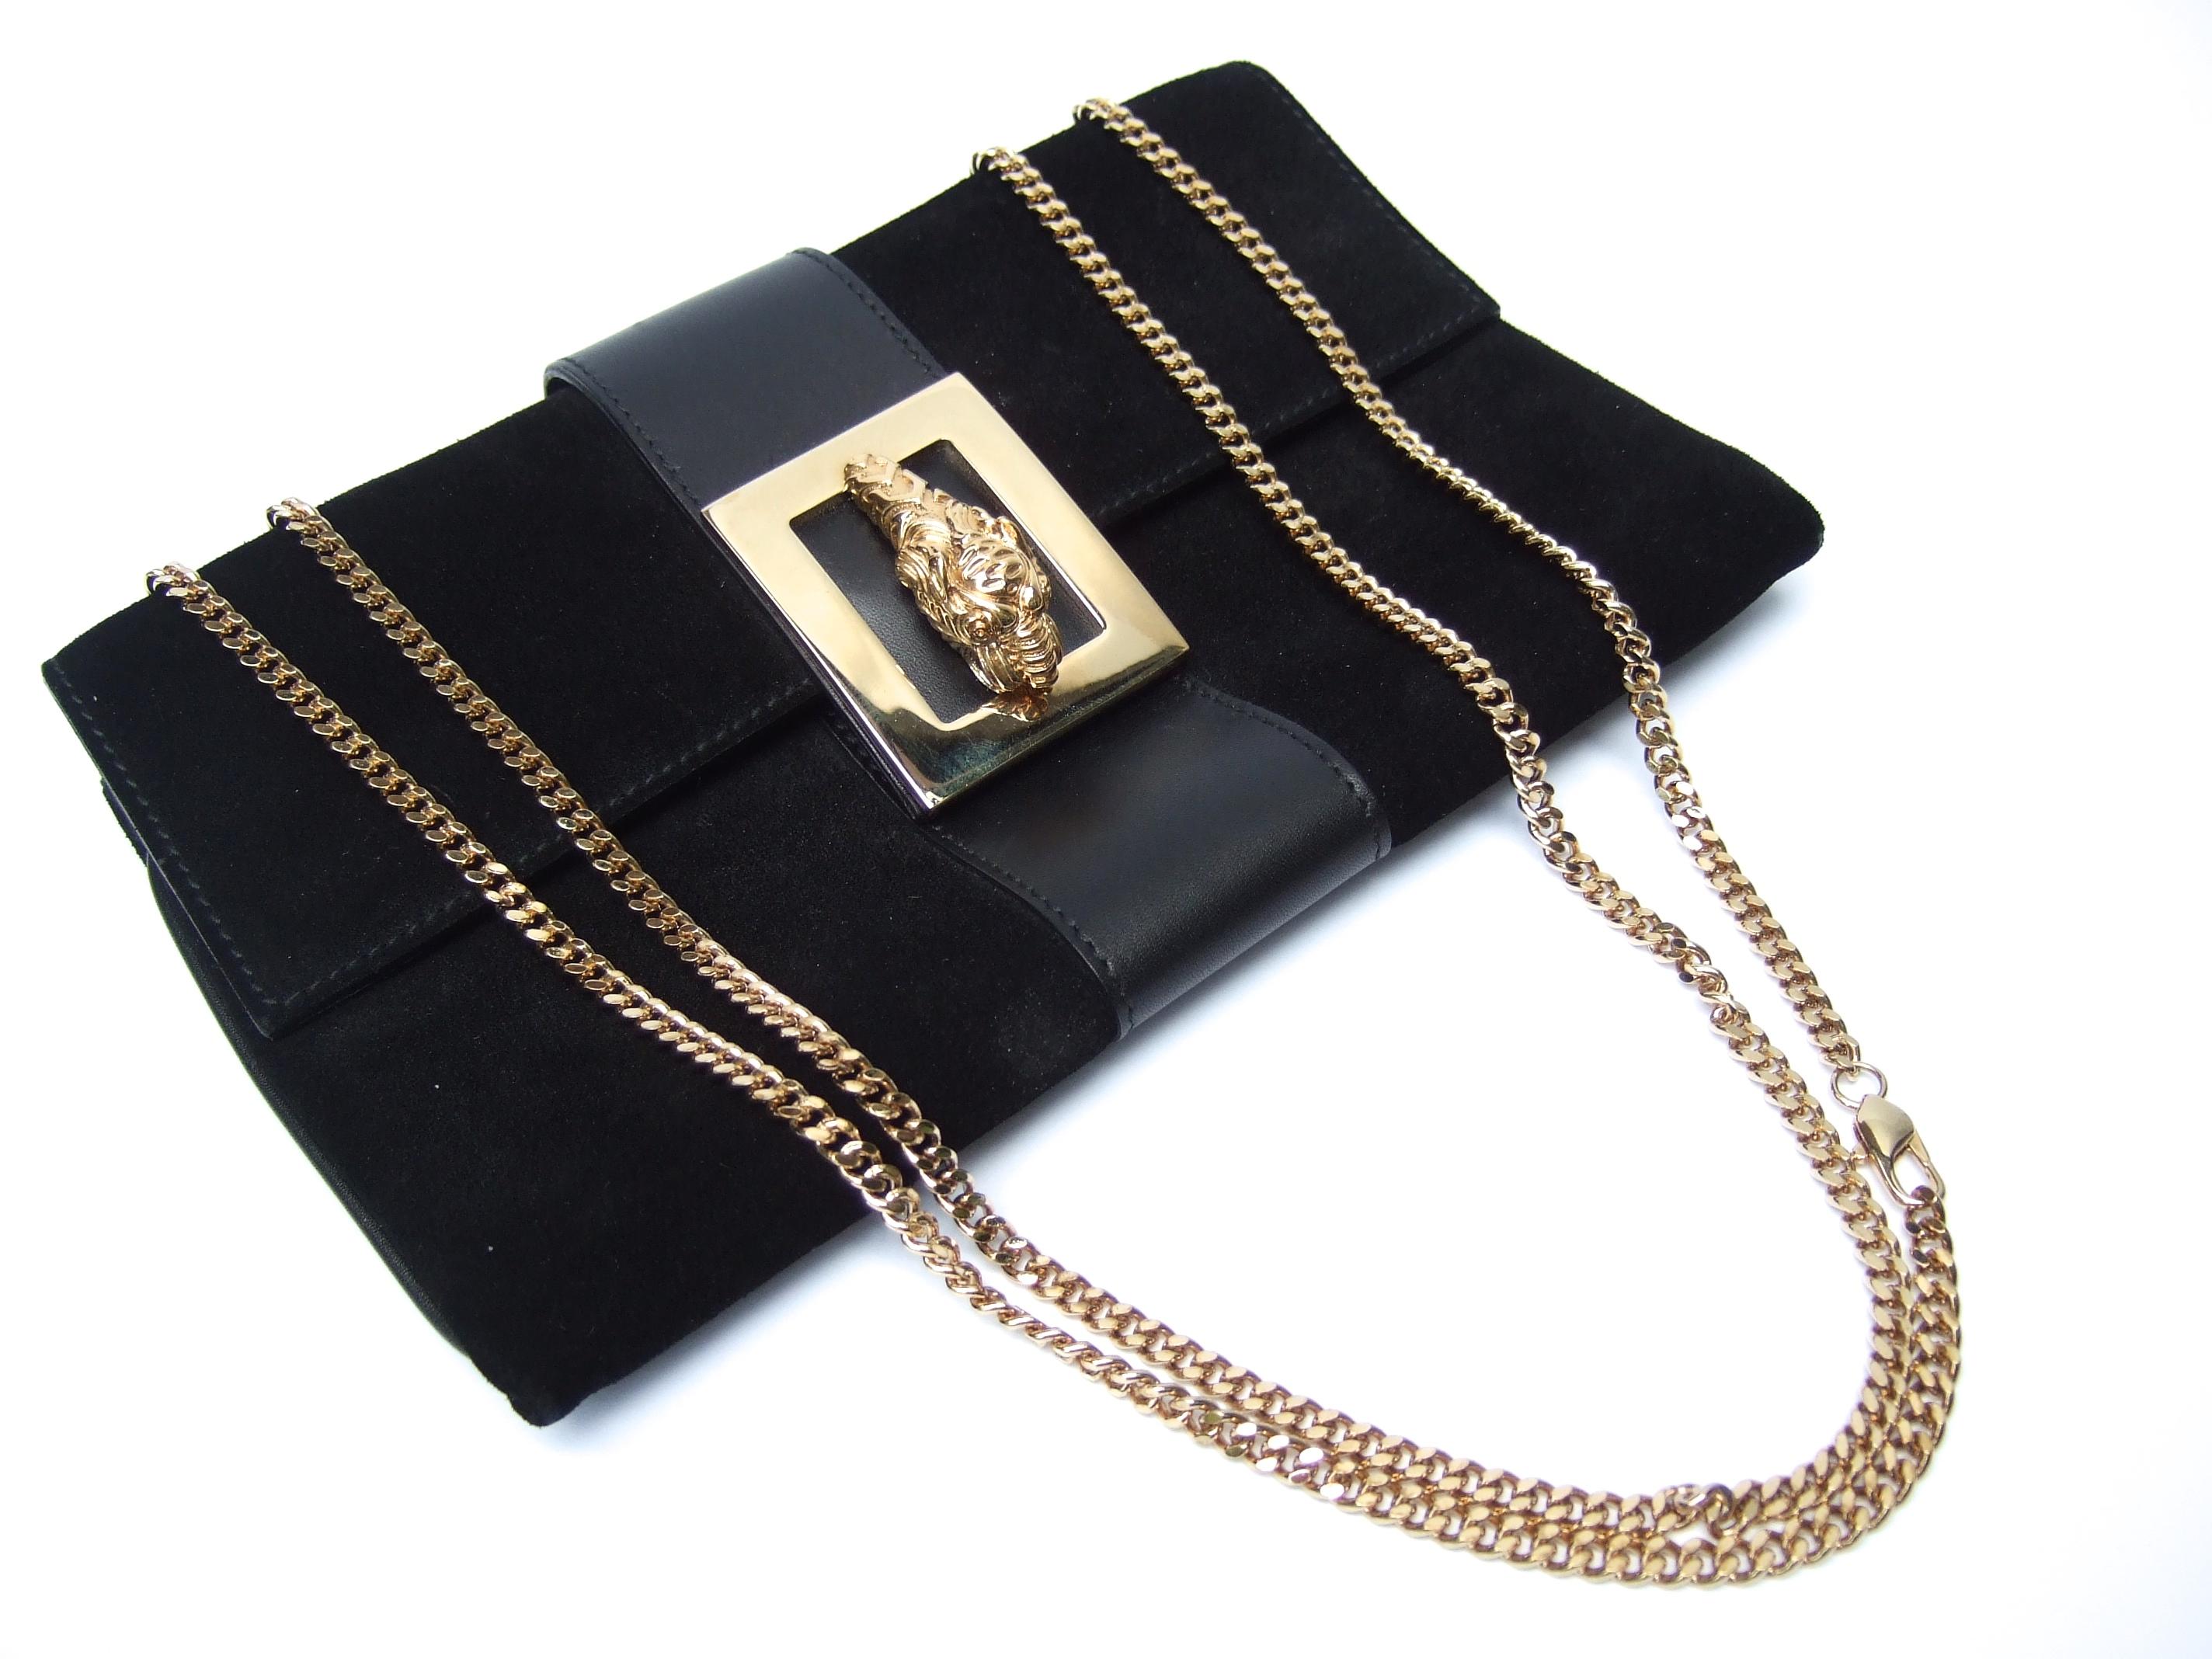 Gucci Italy Rare Black Suede Tiger Emblem Handbag Tom Ford Era c 2000 6